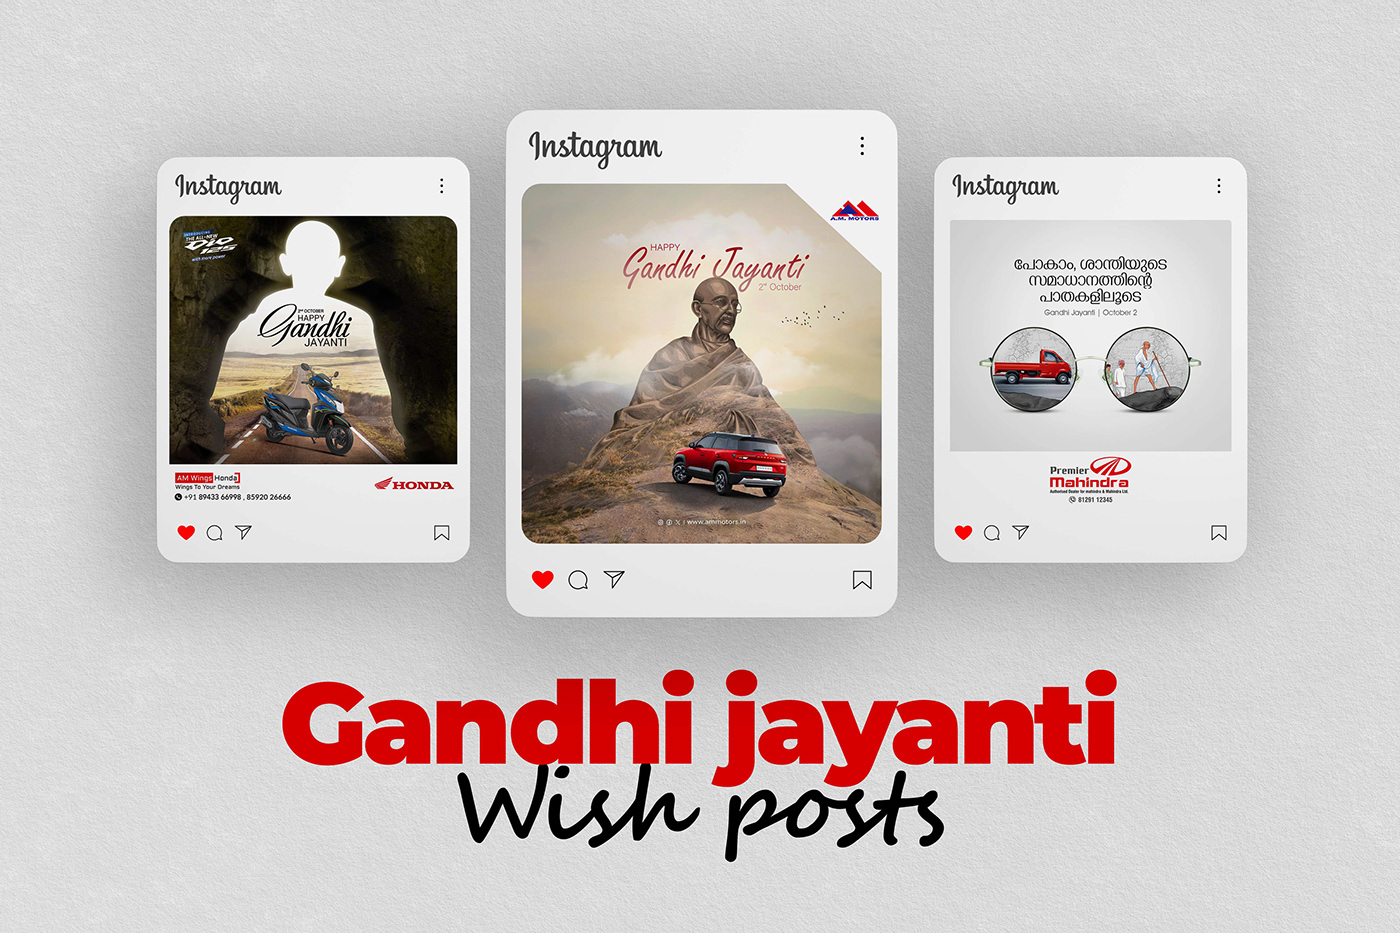 India gandhi jayanti creatives manupulation Social media post Graphic Designer Socialmedia ads post social media